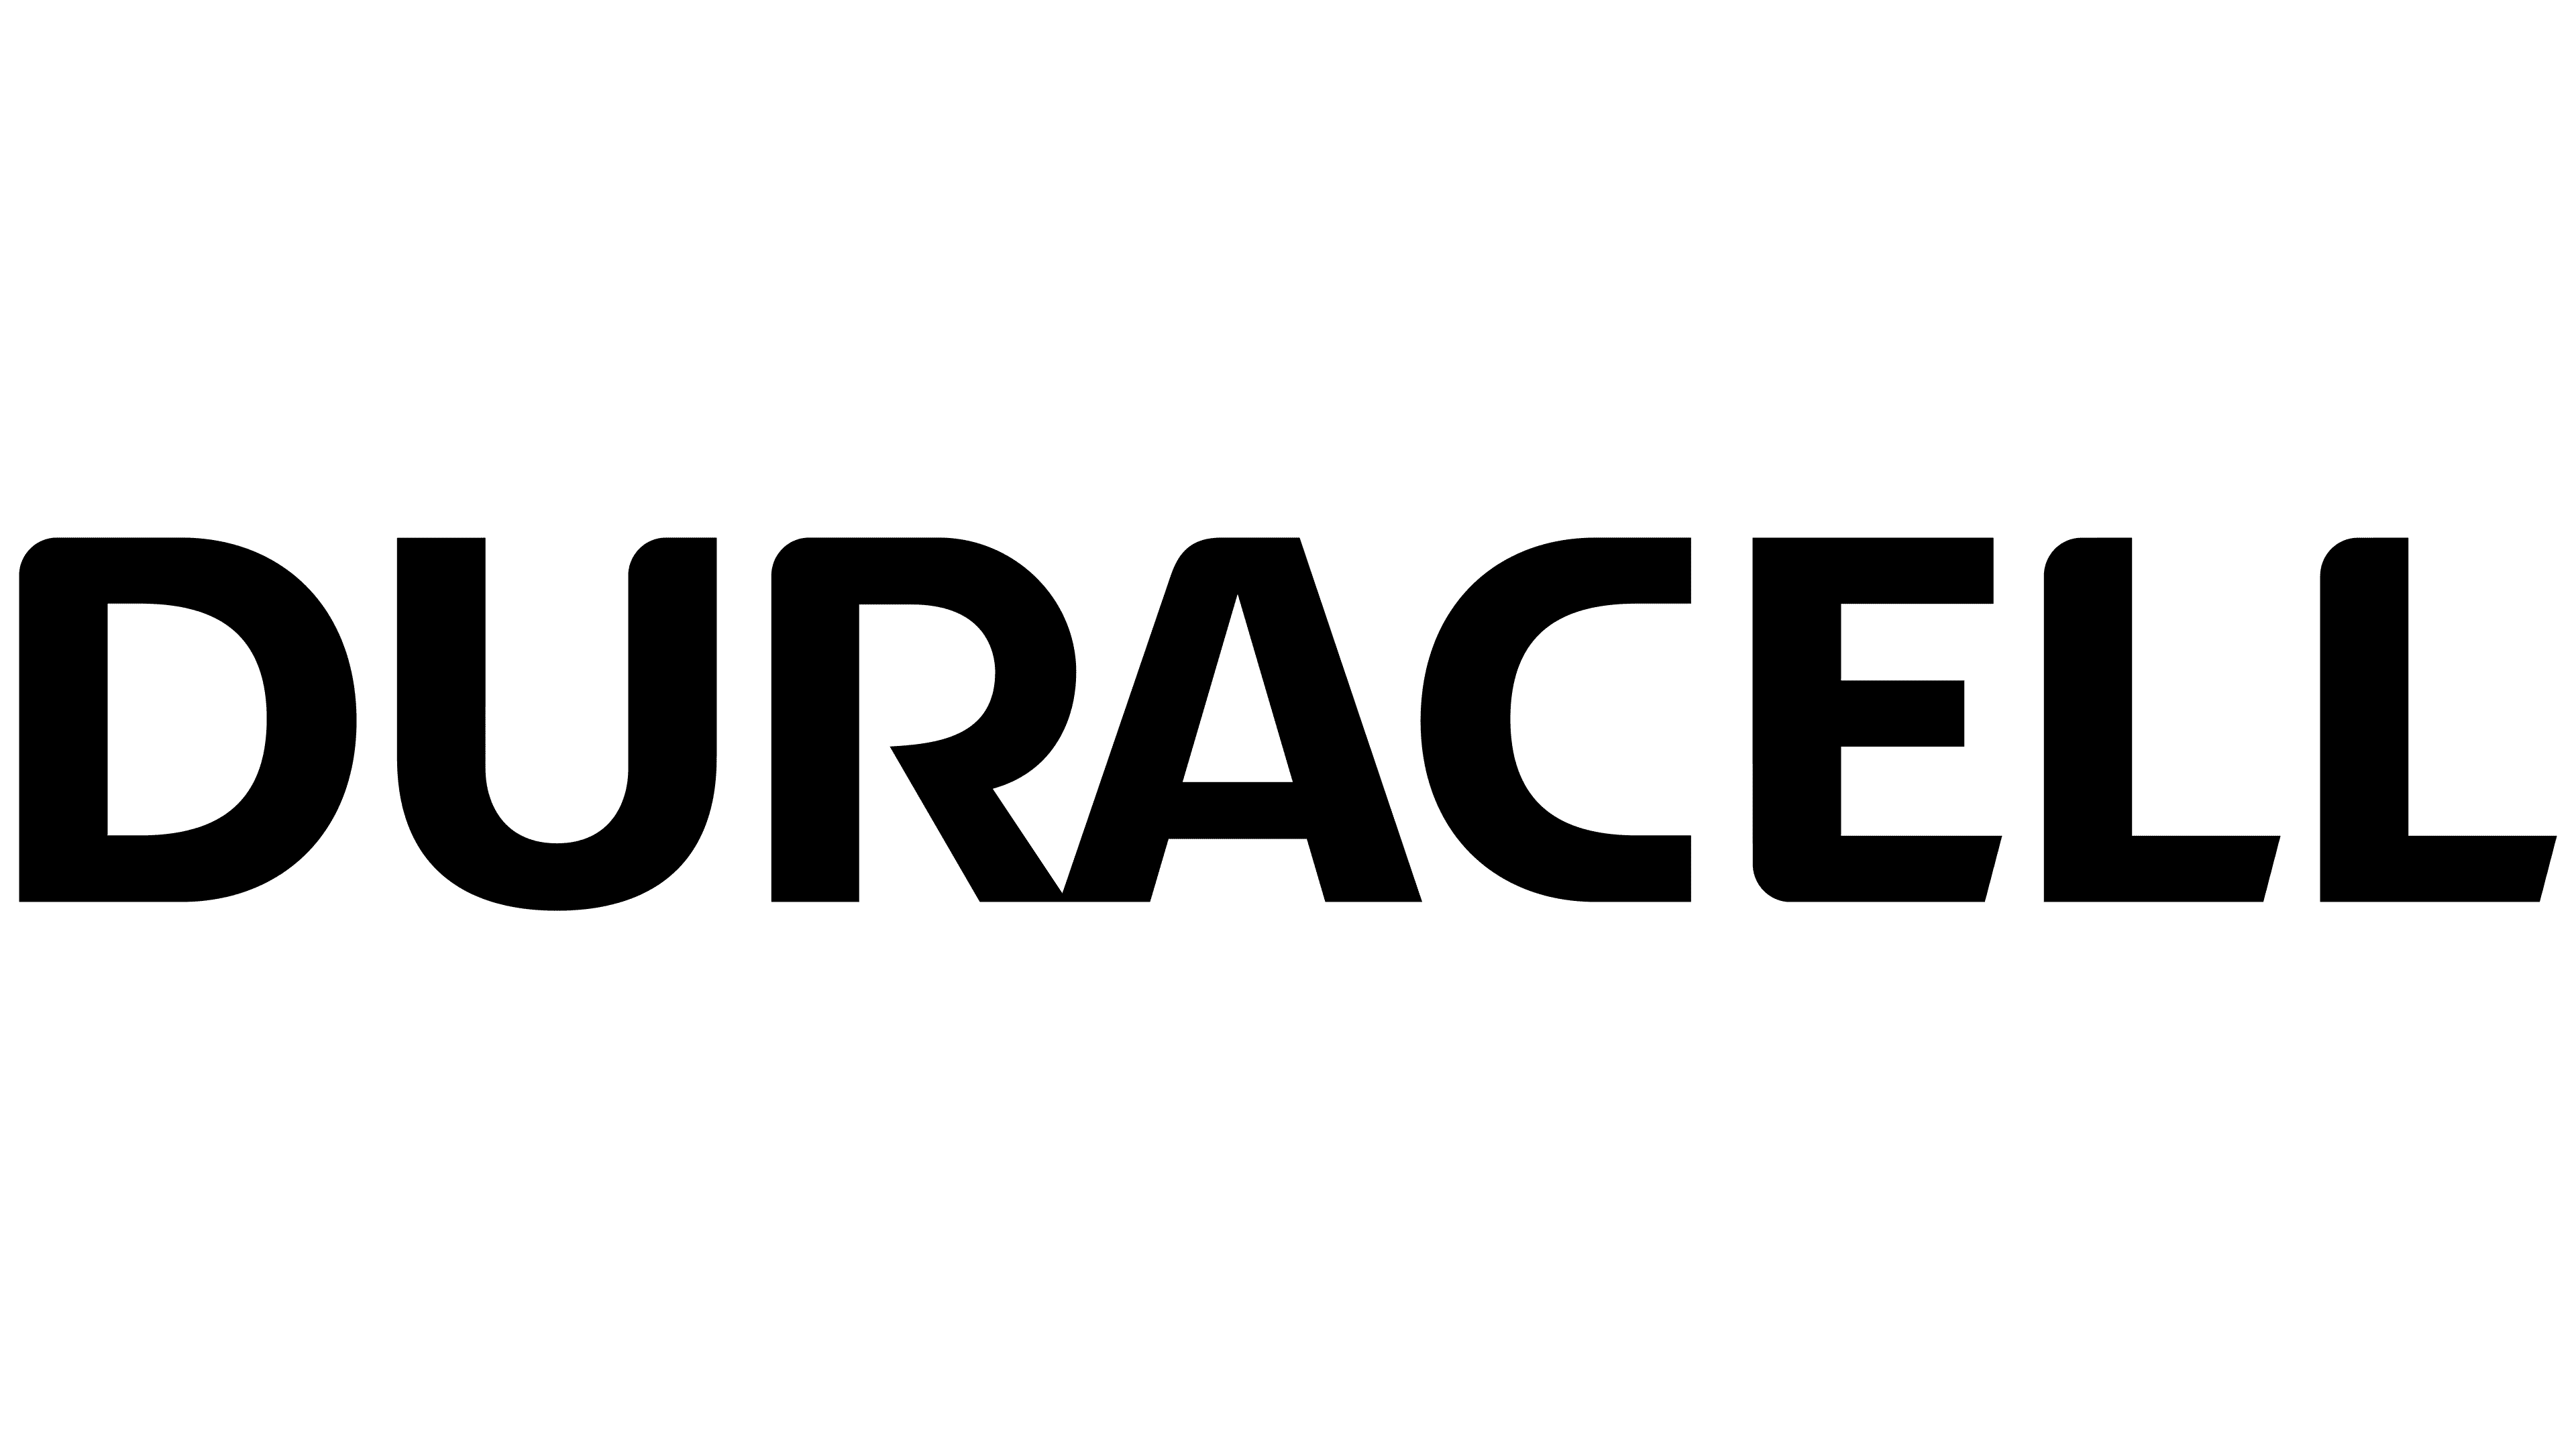 Logo Duracell